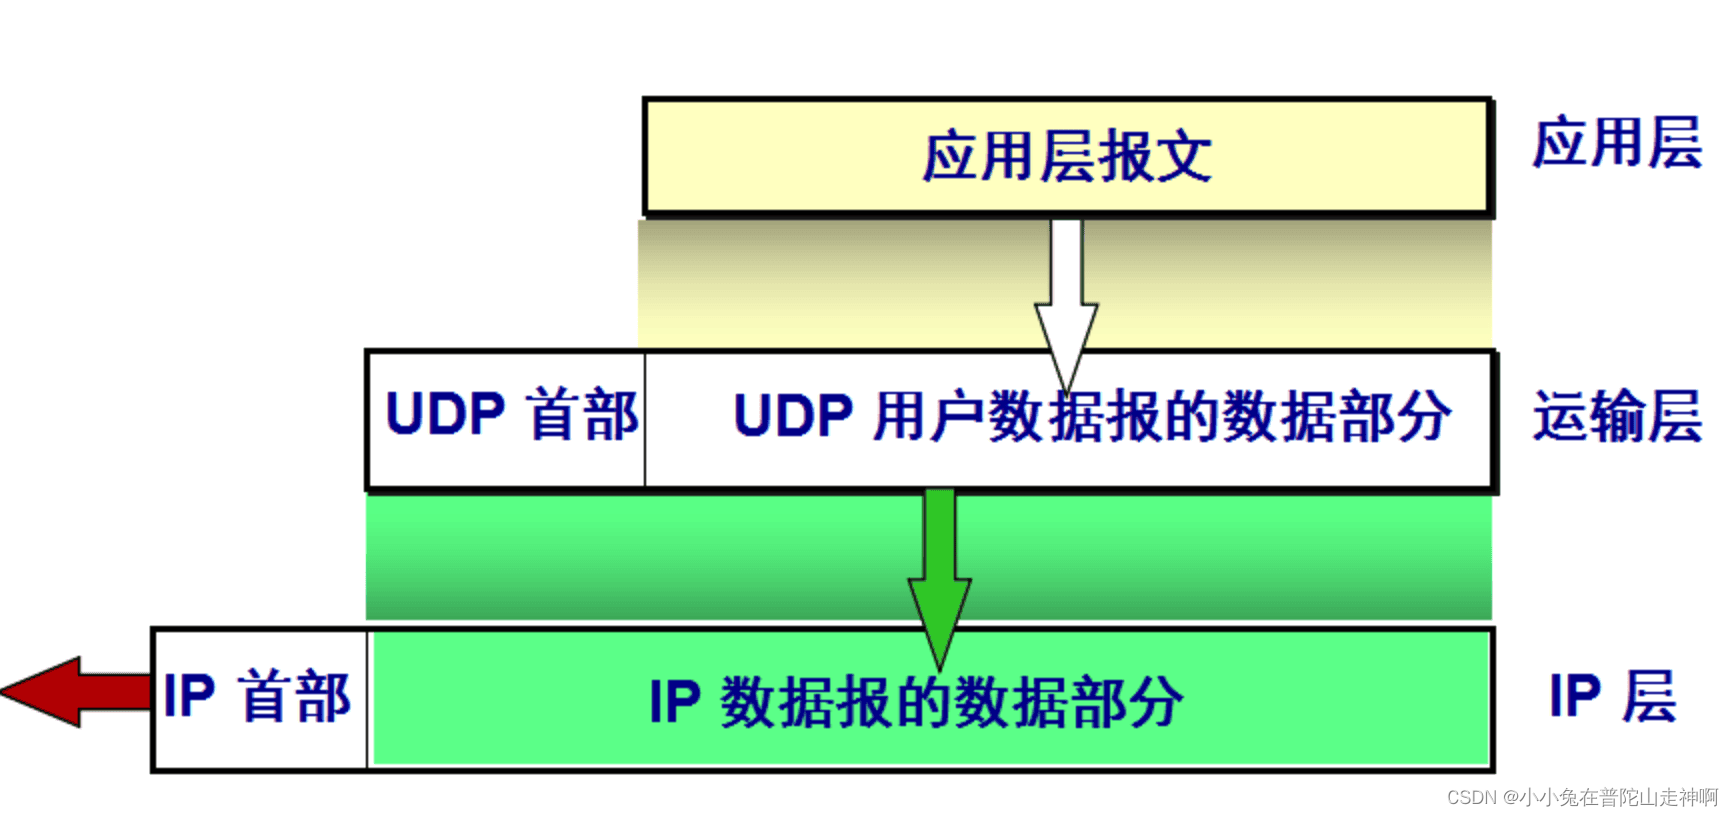 网络协议 - UDP 协议详解